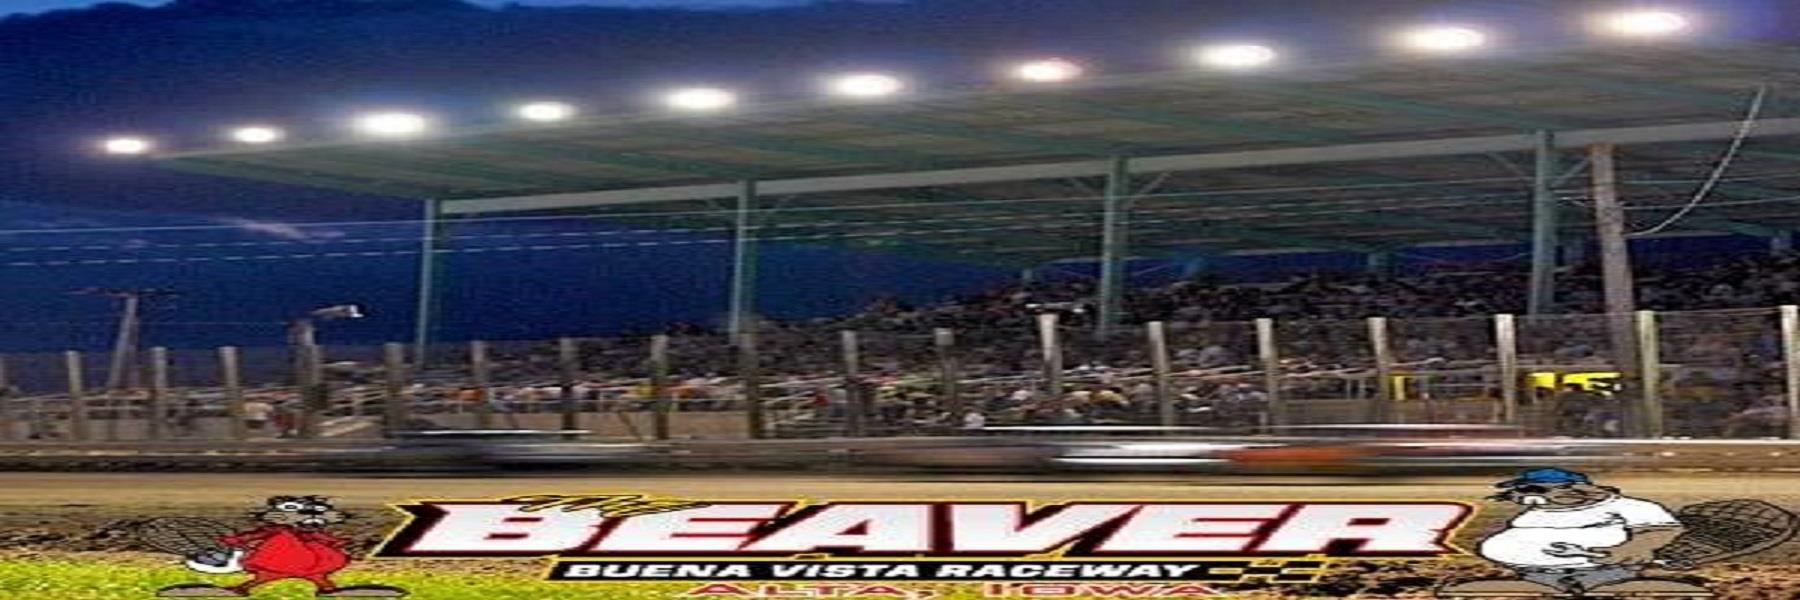 8/10/2022 - Buena Vista Raceway